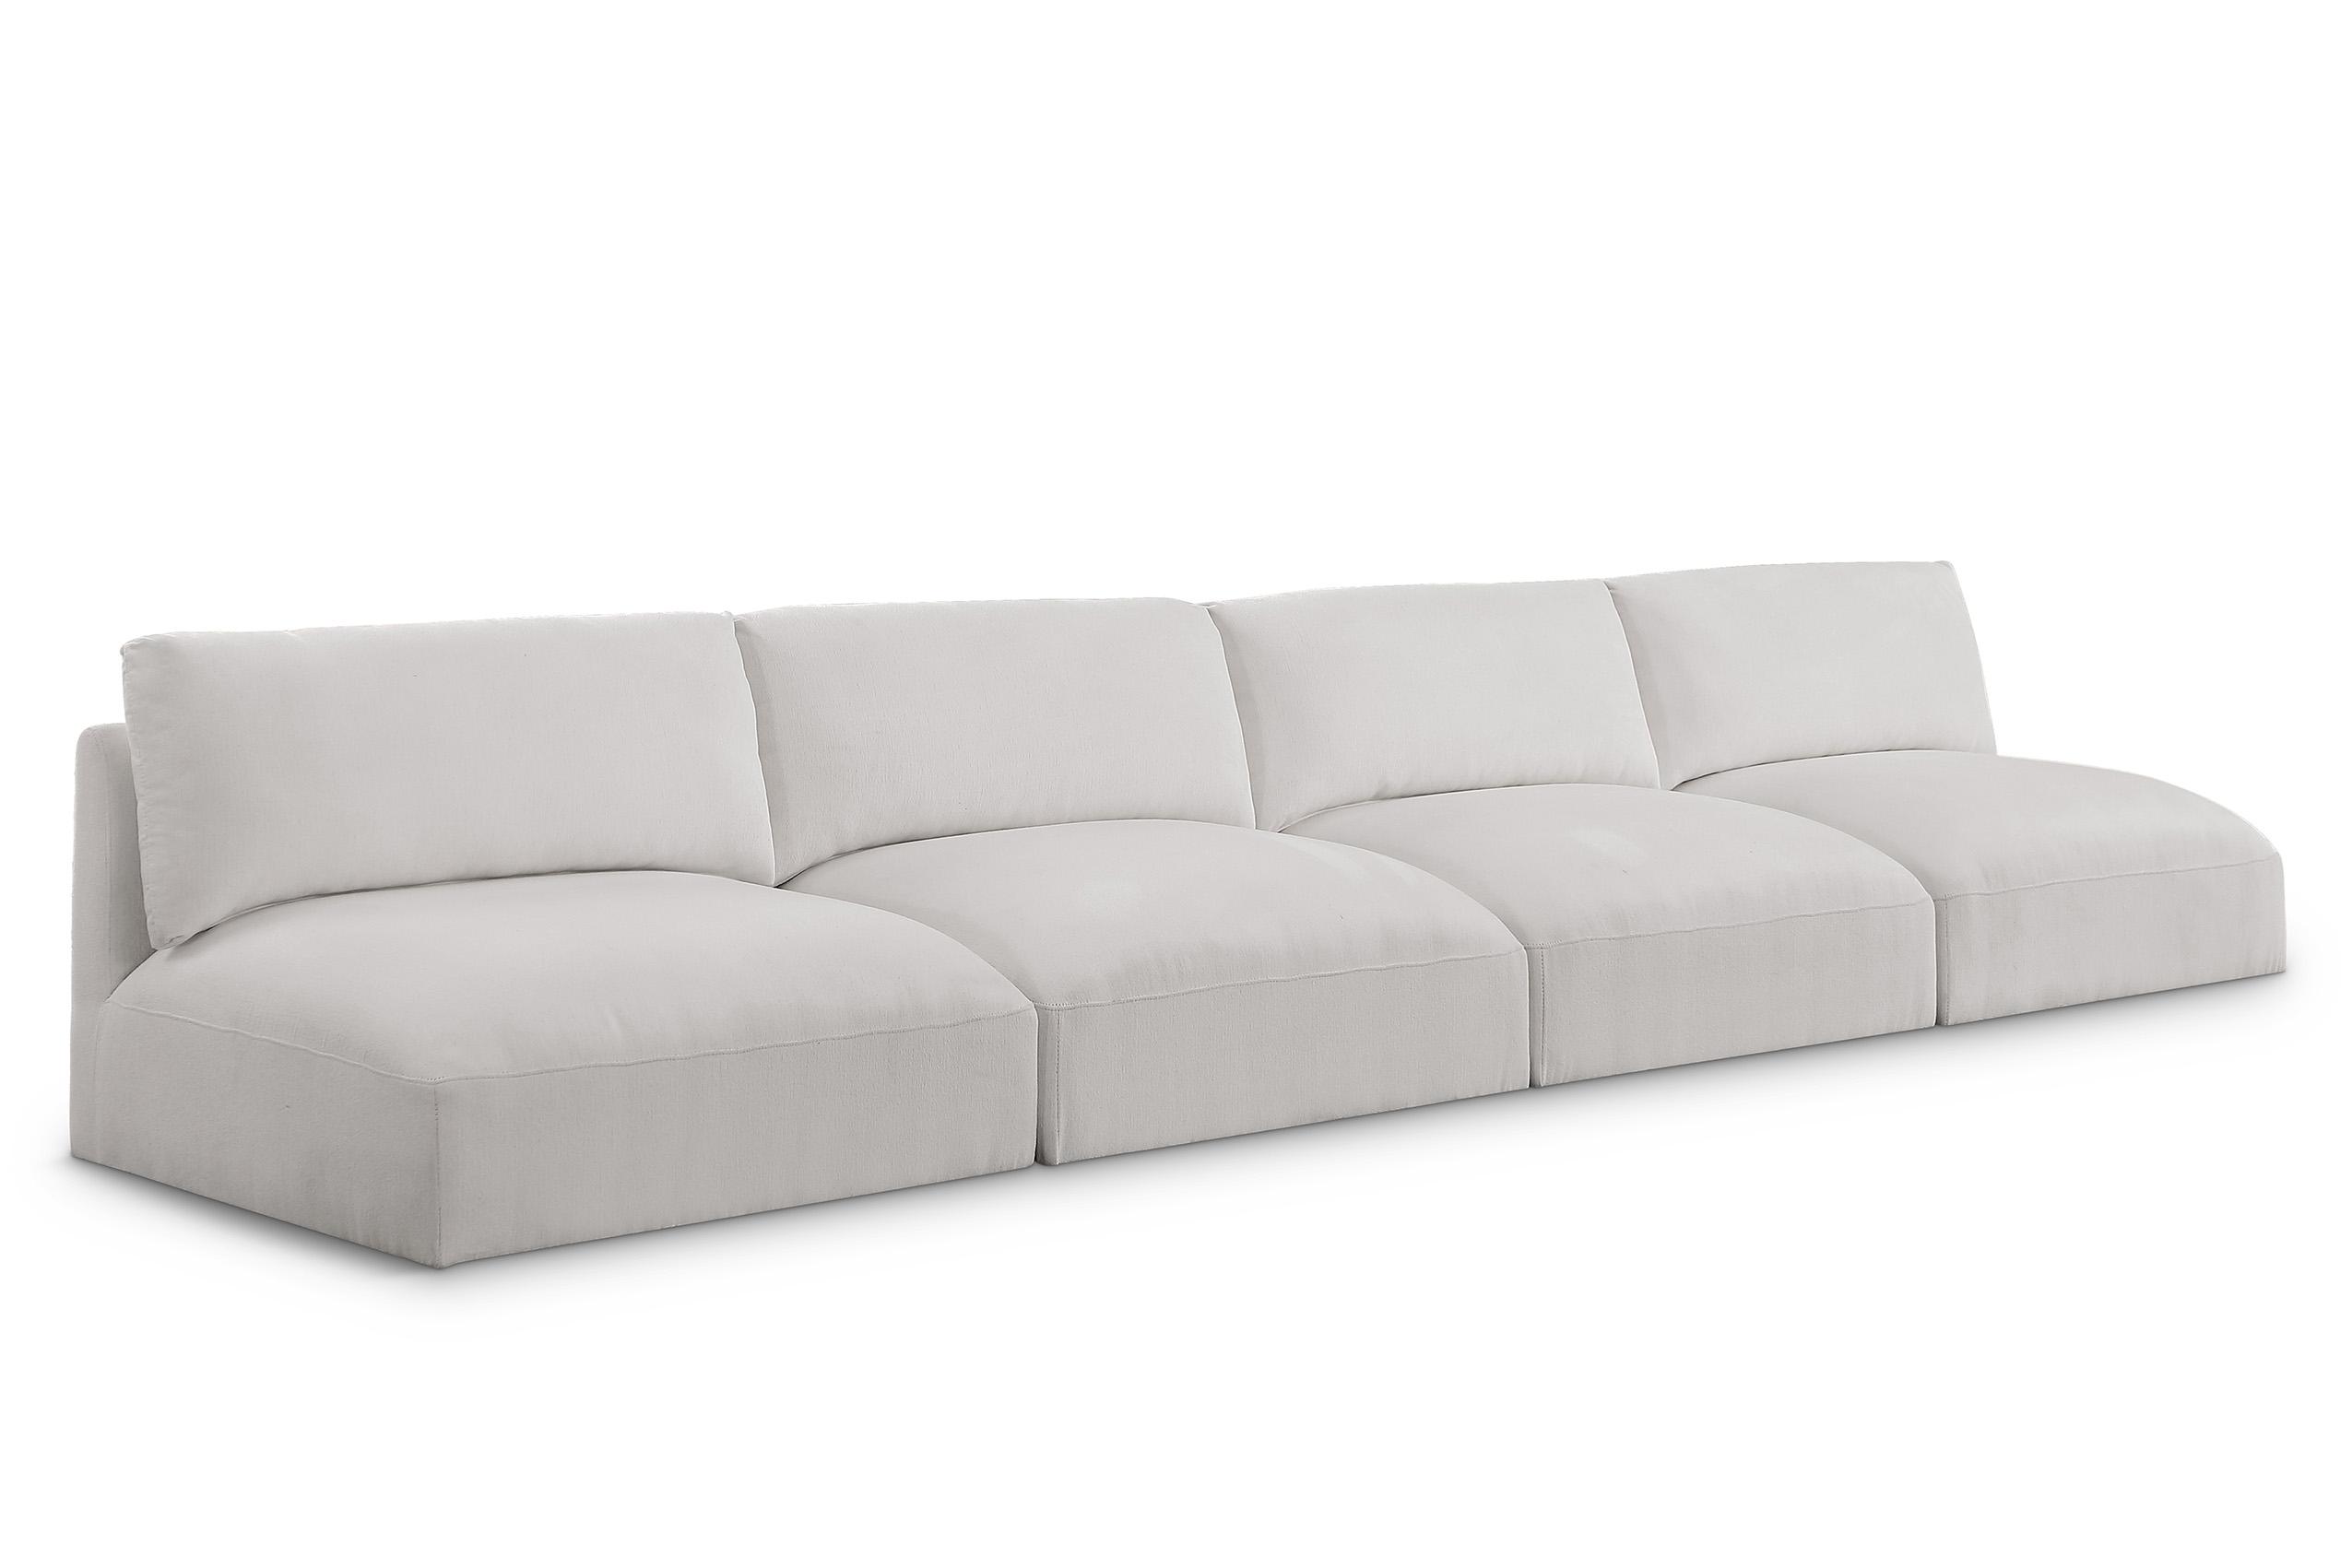 Contemporary, Modern Modular Sofa EASE 696Cream-S152A 696Cream-S152A in Cream Fabric